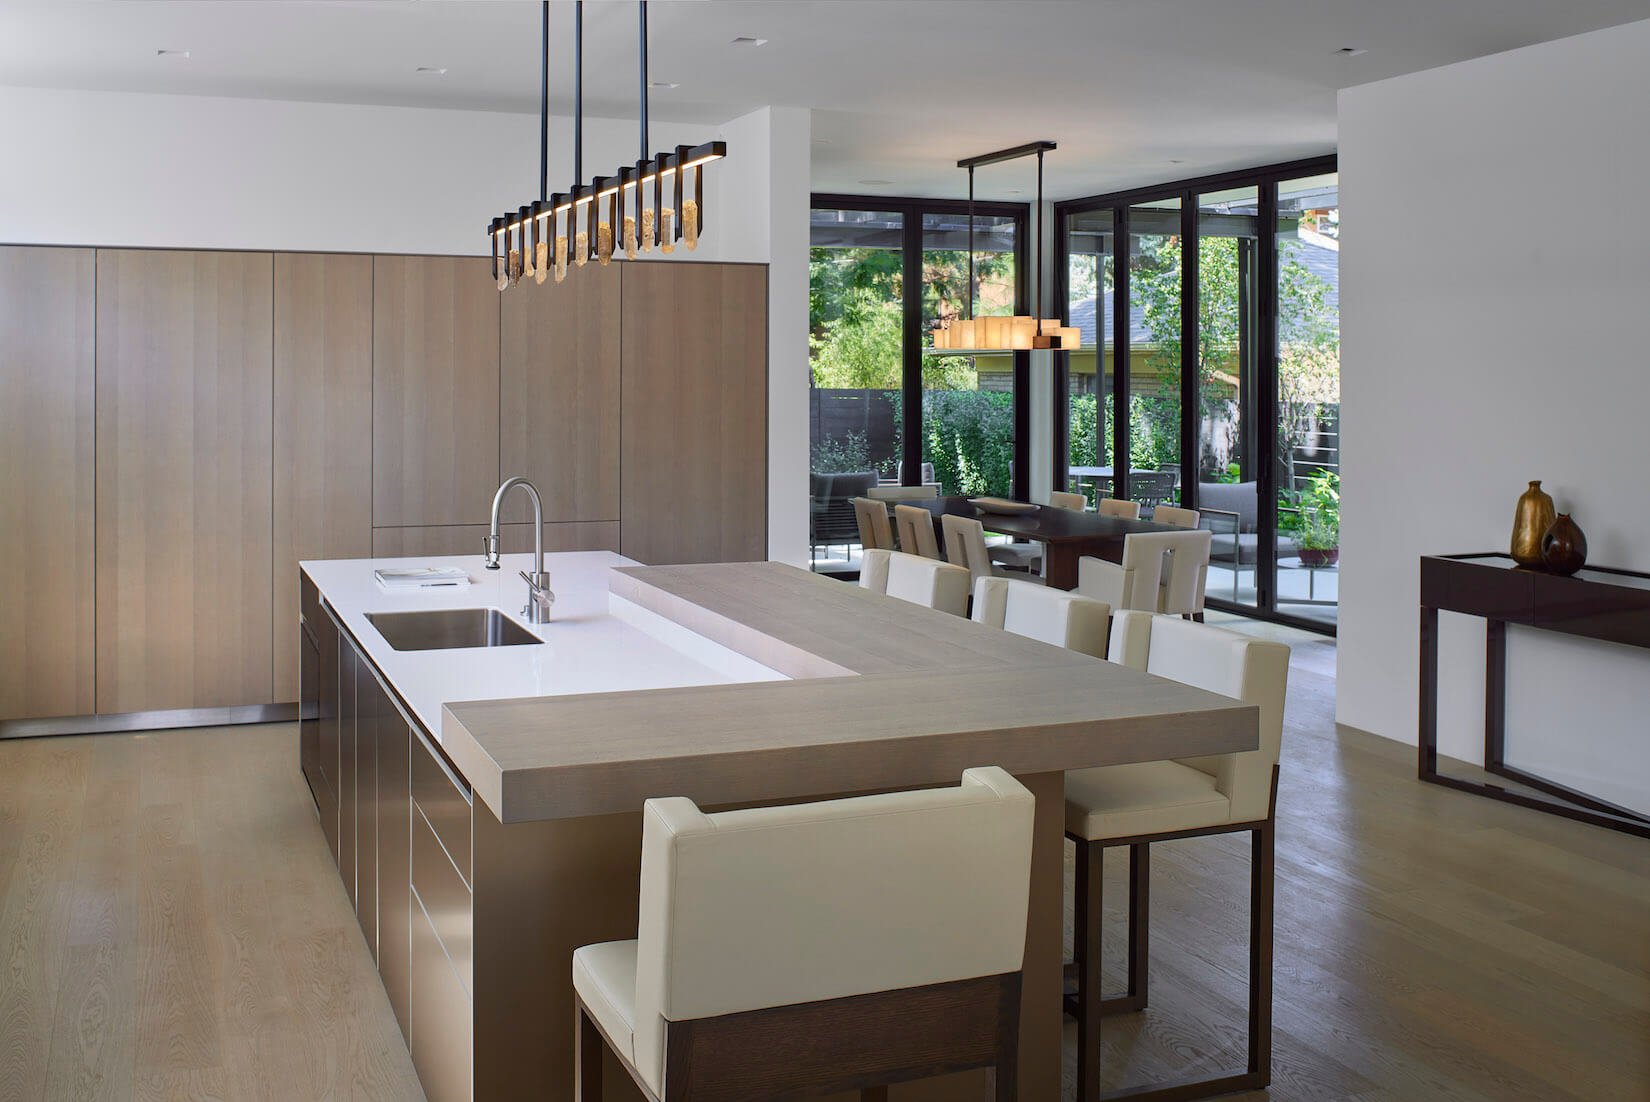 sleek kitchen designs